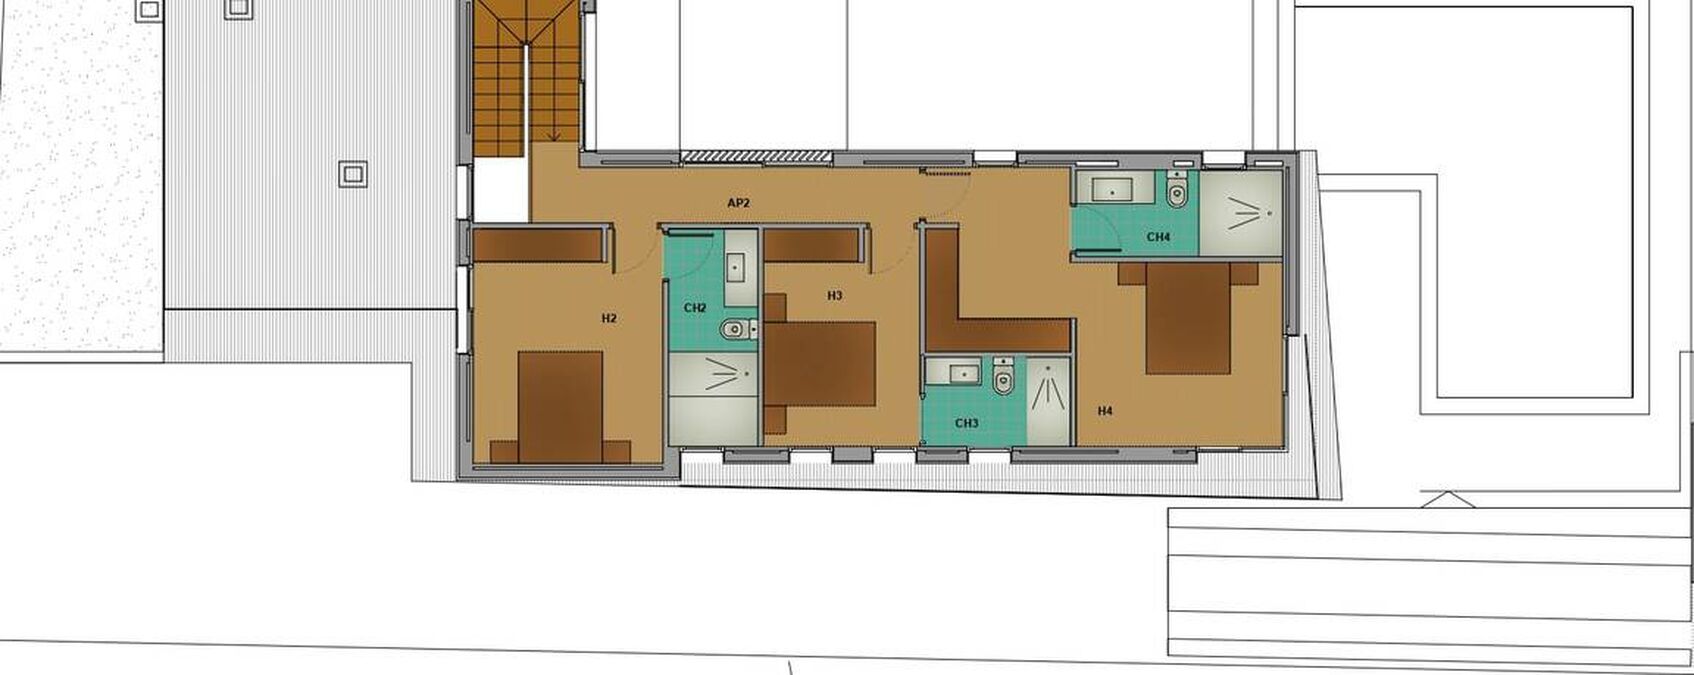 Nouveau projet de deux maisons sur Empuriabrava en vente, quartier privilégié, piscine, garage